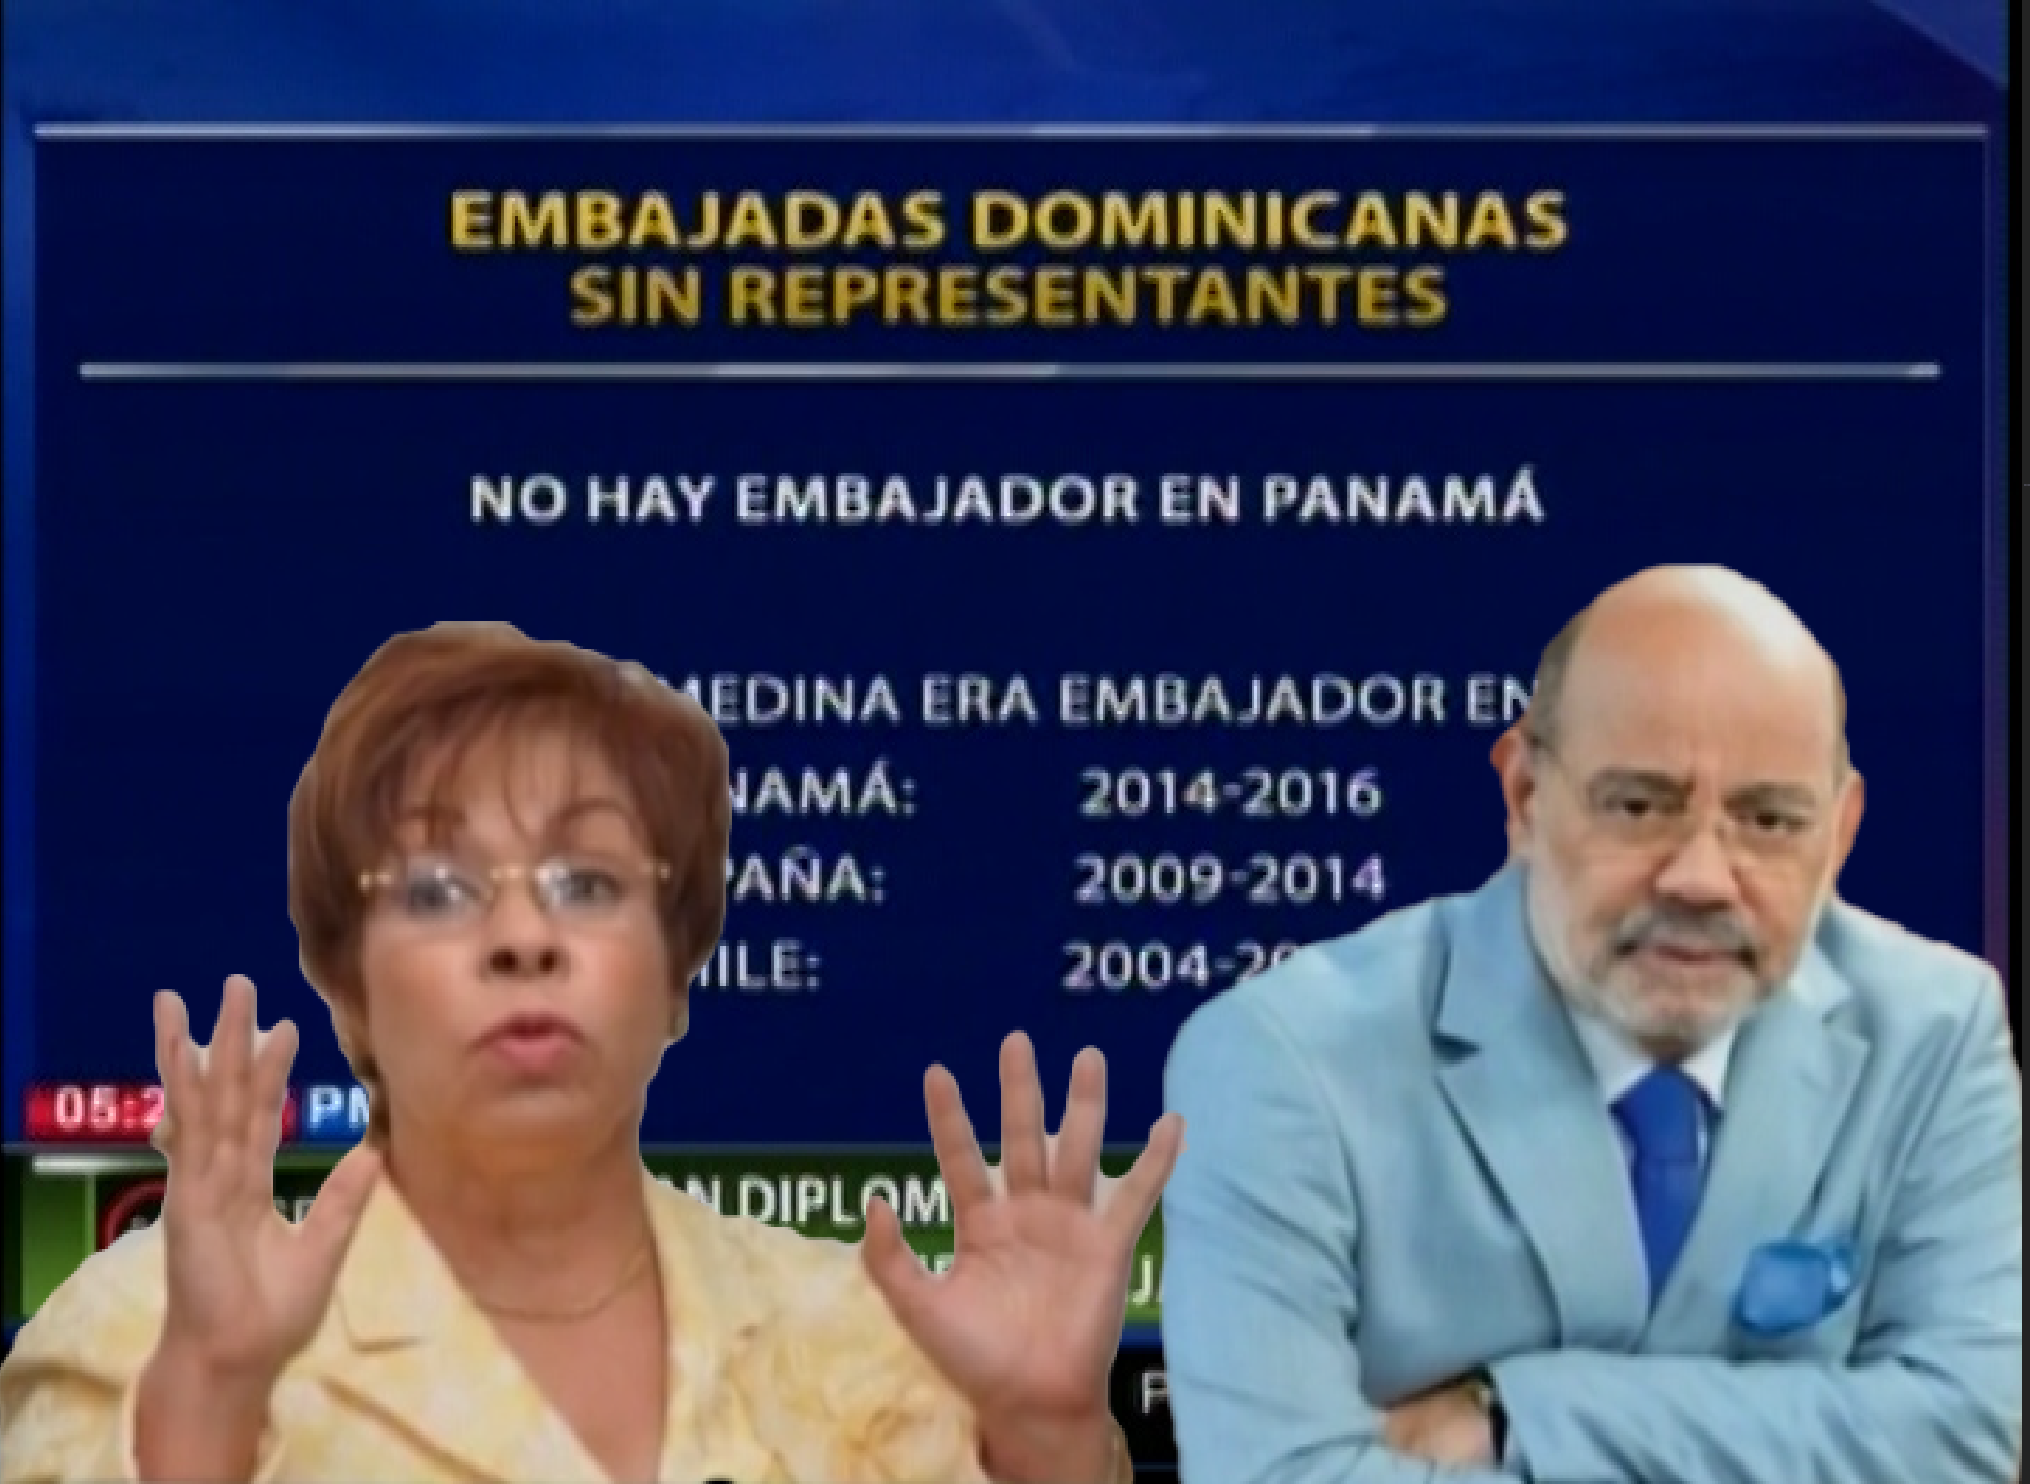 Botellas, Falta De Diplomáticos Y Más Escándalos Con “Embajadores” Dominicanos